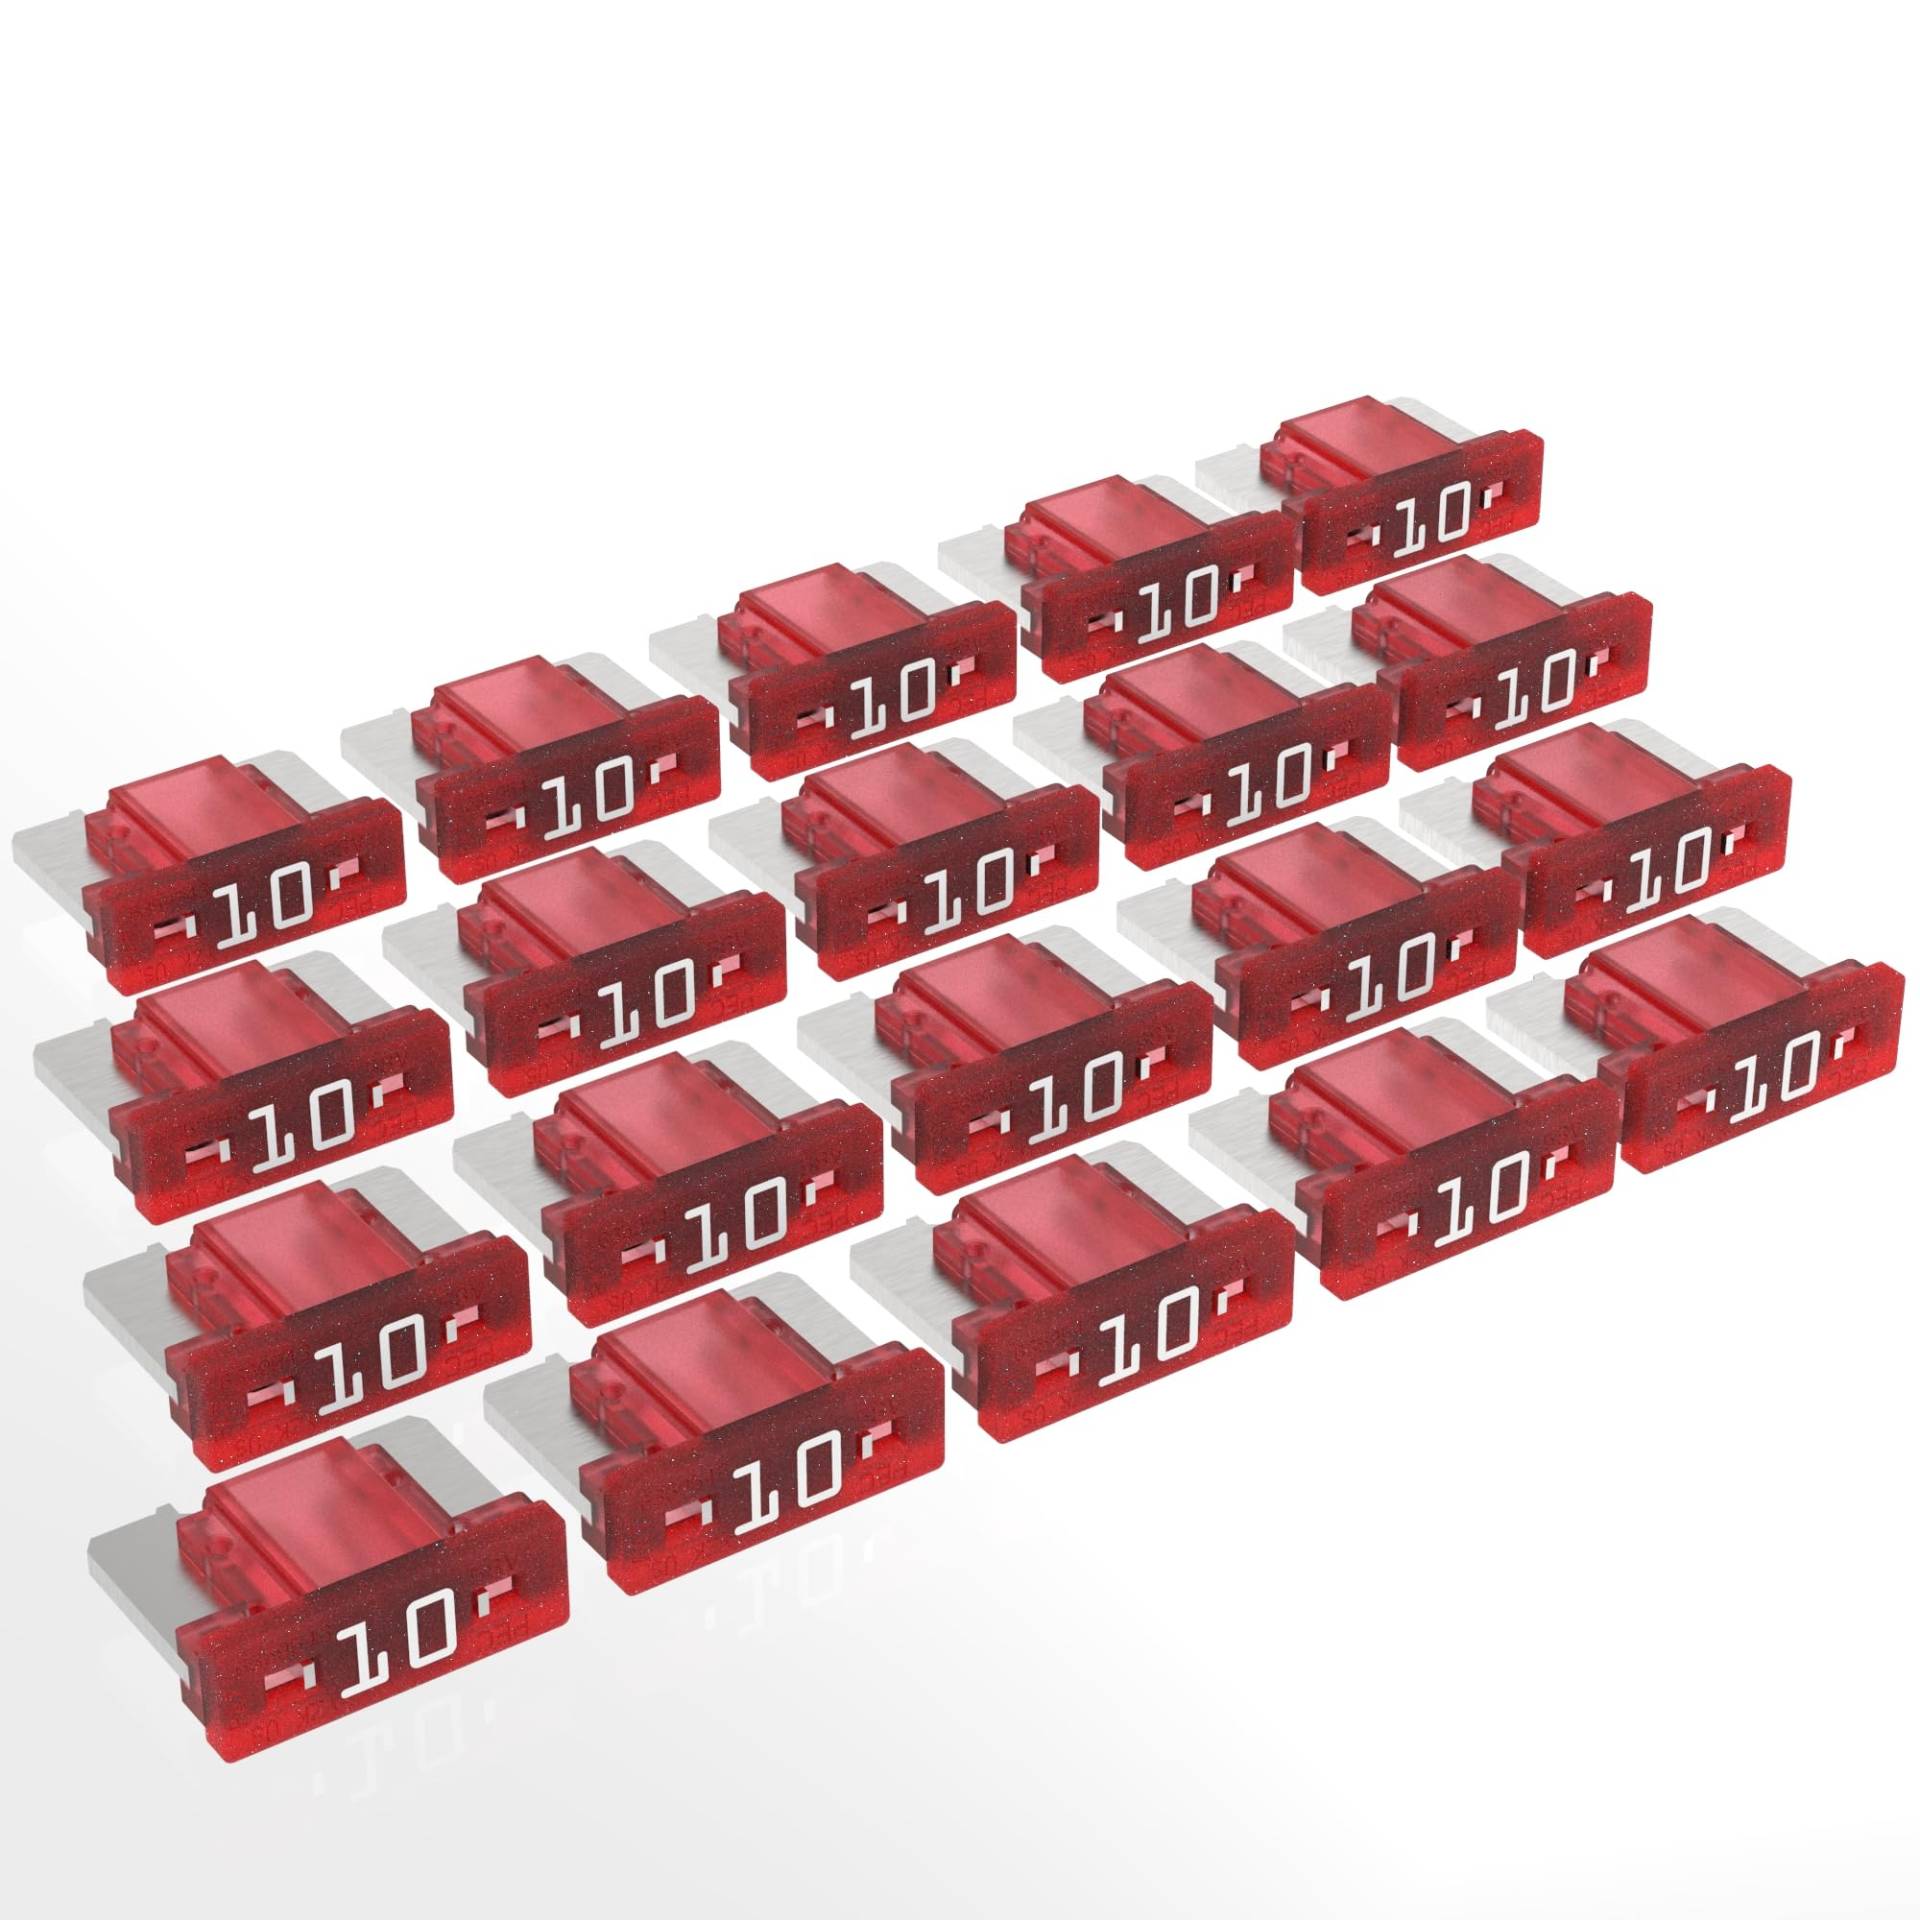 AUPROTEC Mini LP Kfz Sicherungen Flachstecksicherungen 2A - 30A Auswahl: 10A Ampere rot, 20 Stück von AUPROTEC